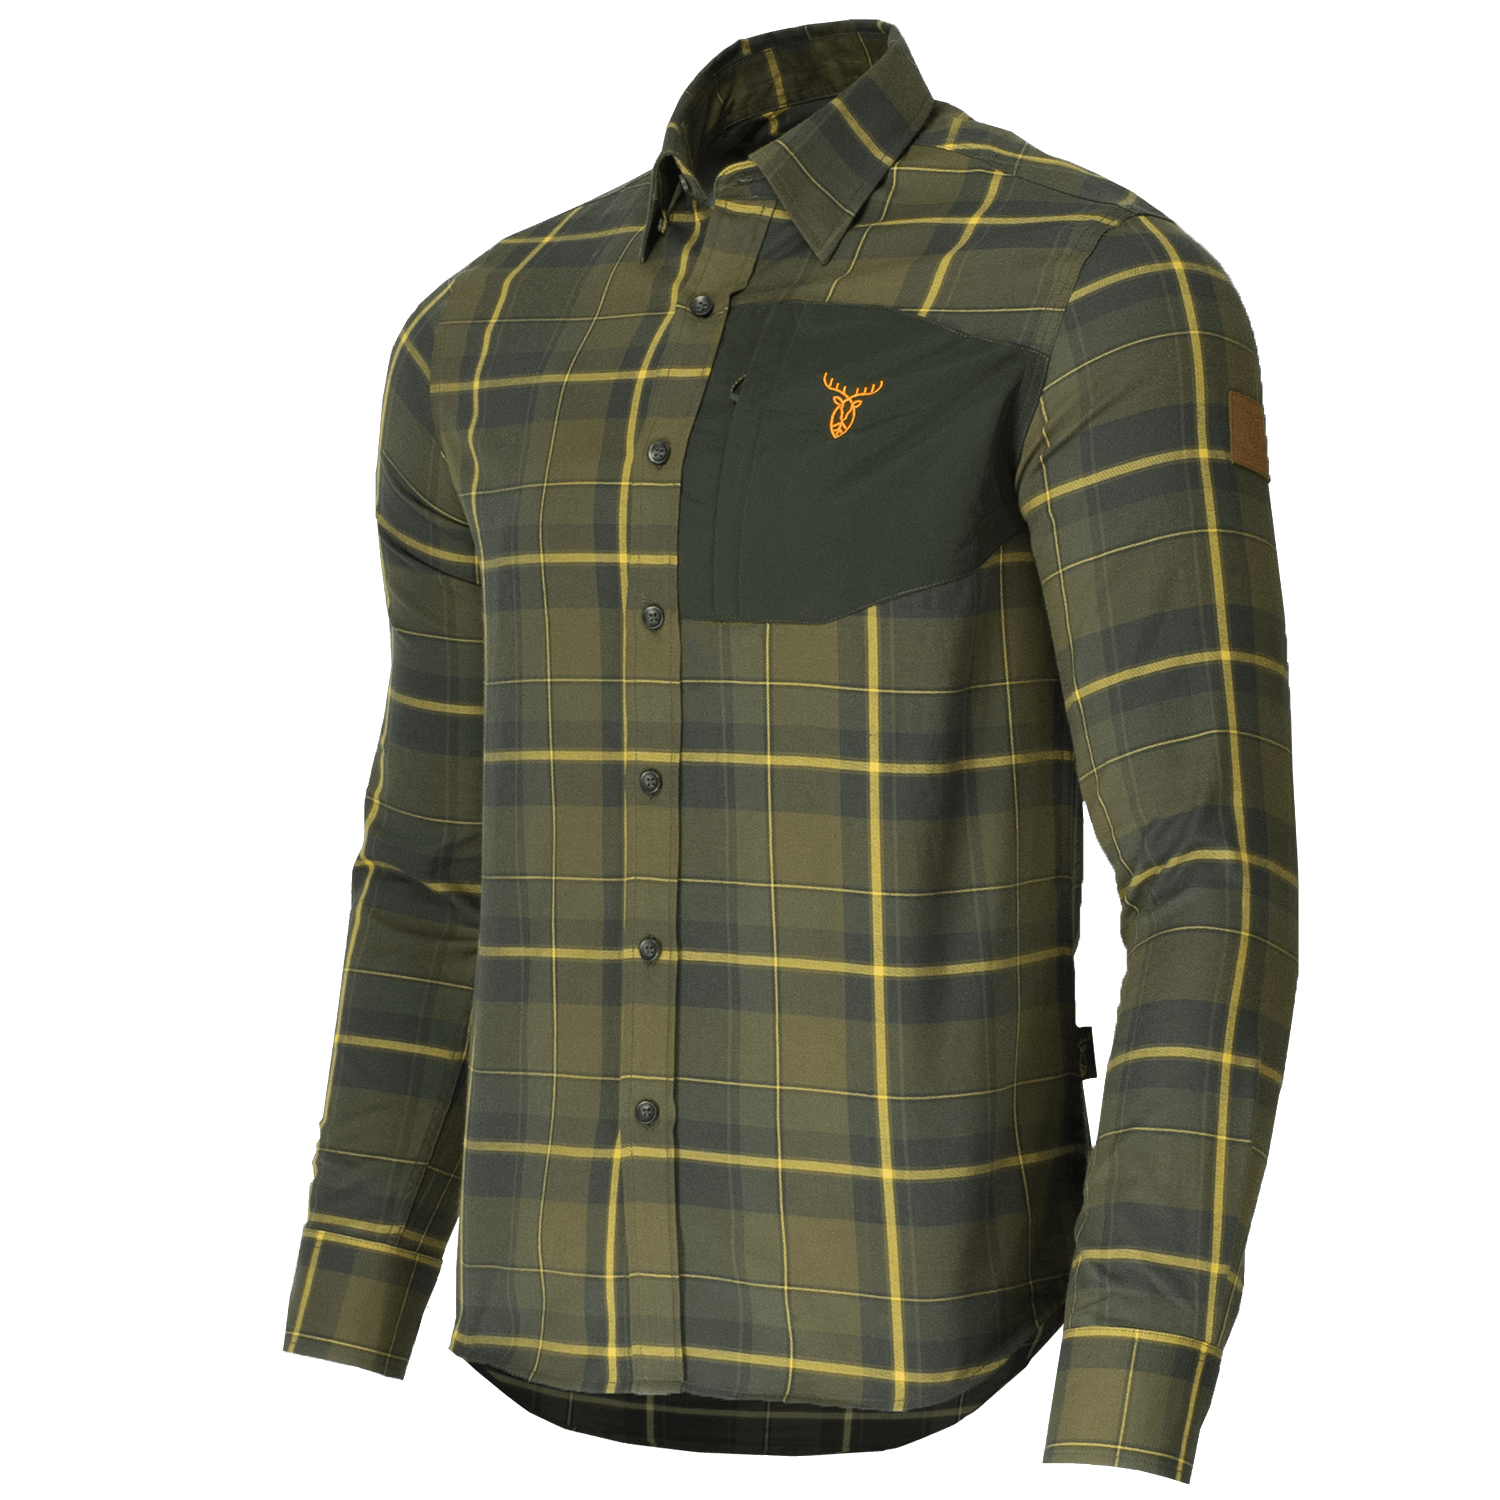  Pirscher Gear Veldoverhemd (Knispergroen) - Zomer jachtkleding